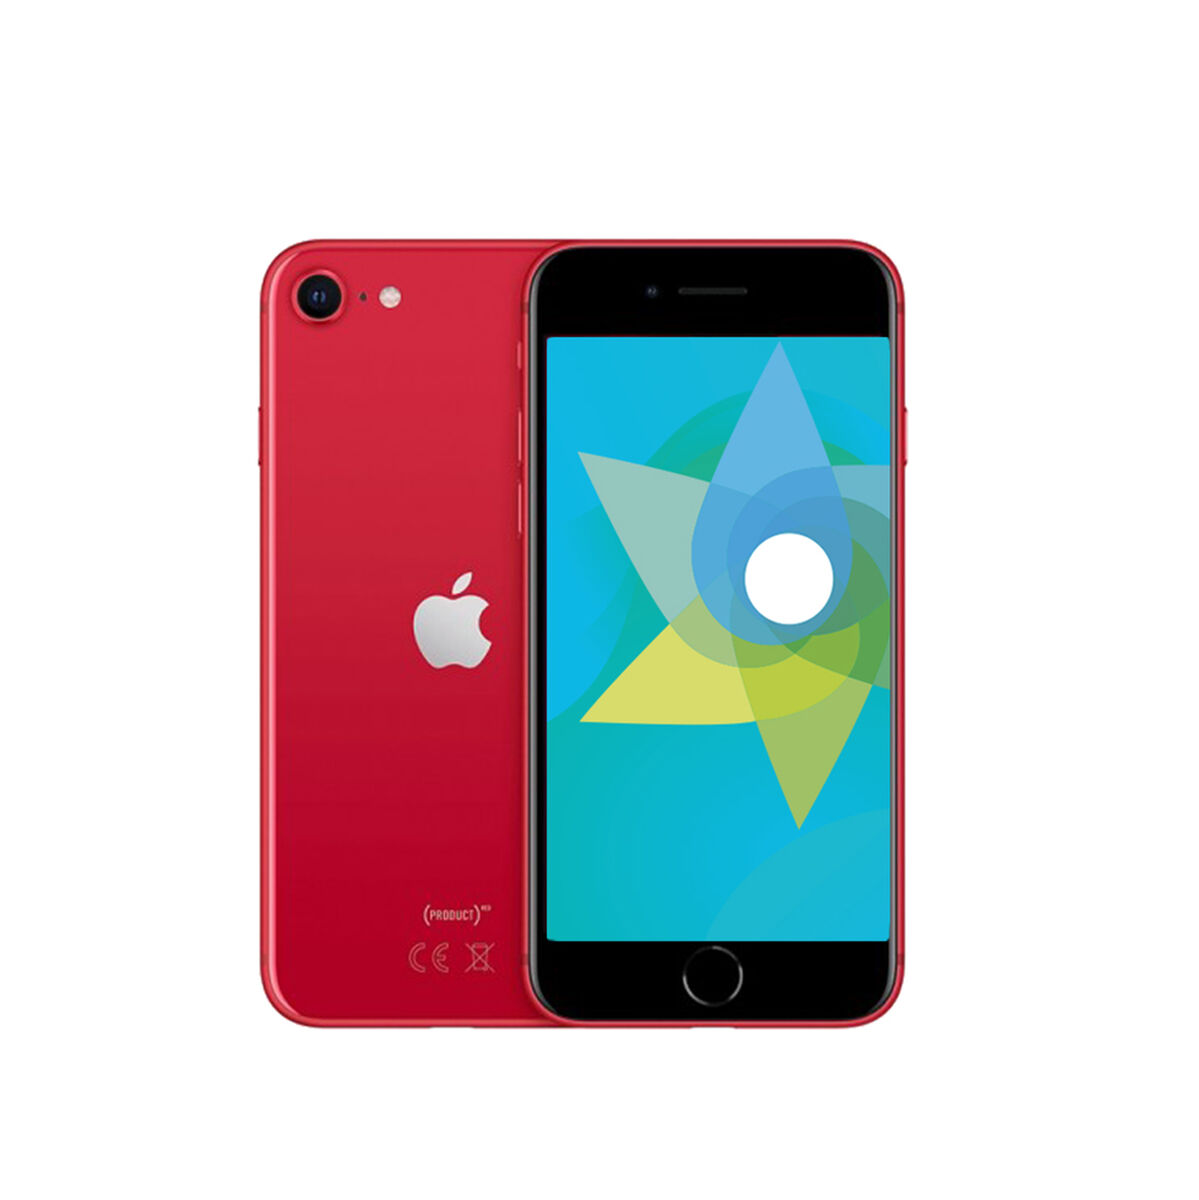 Apple iPhone SE 2 Rojo 64 GB Reacondicionado